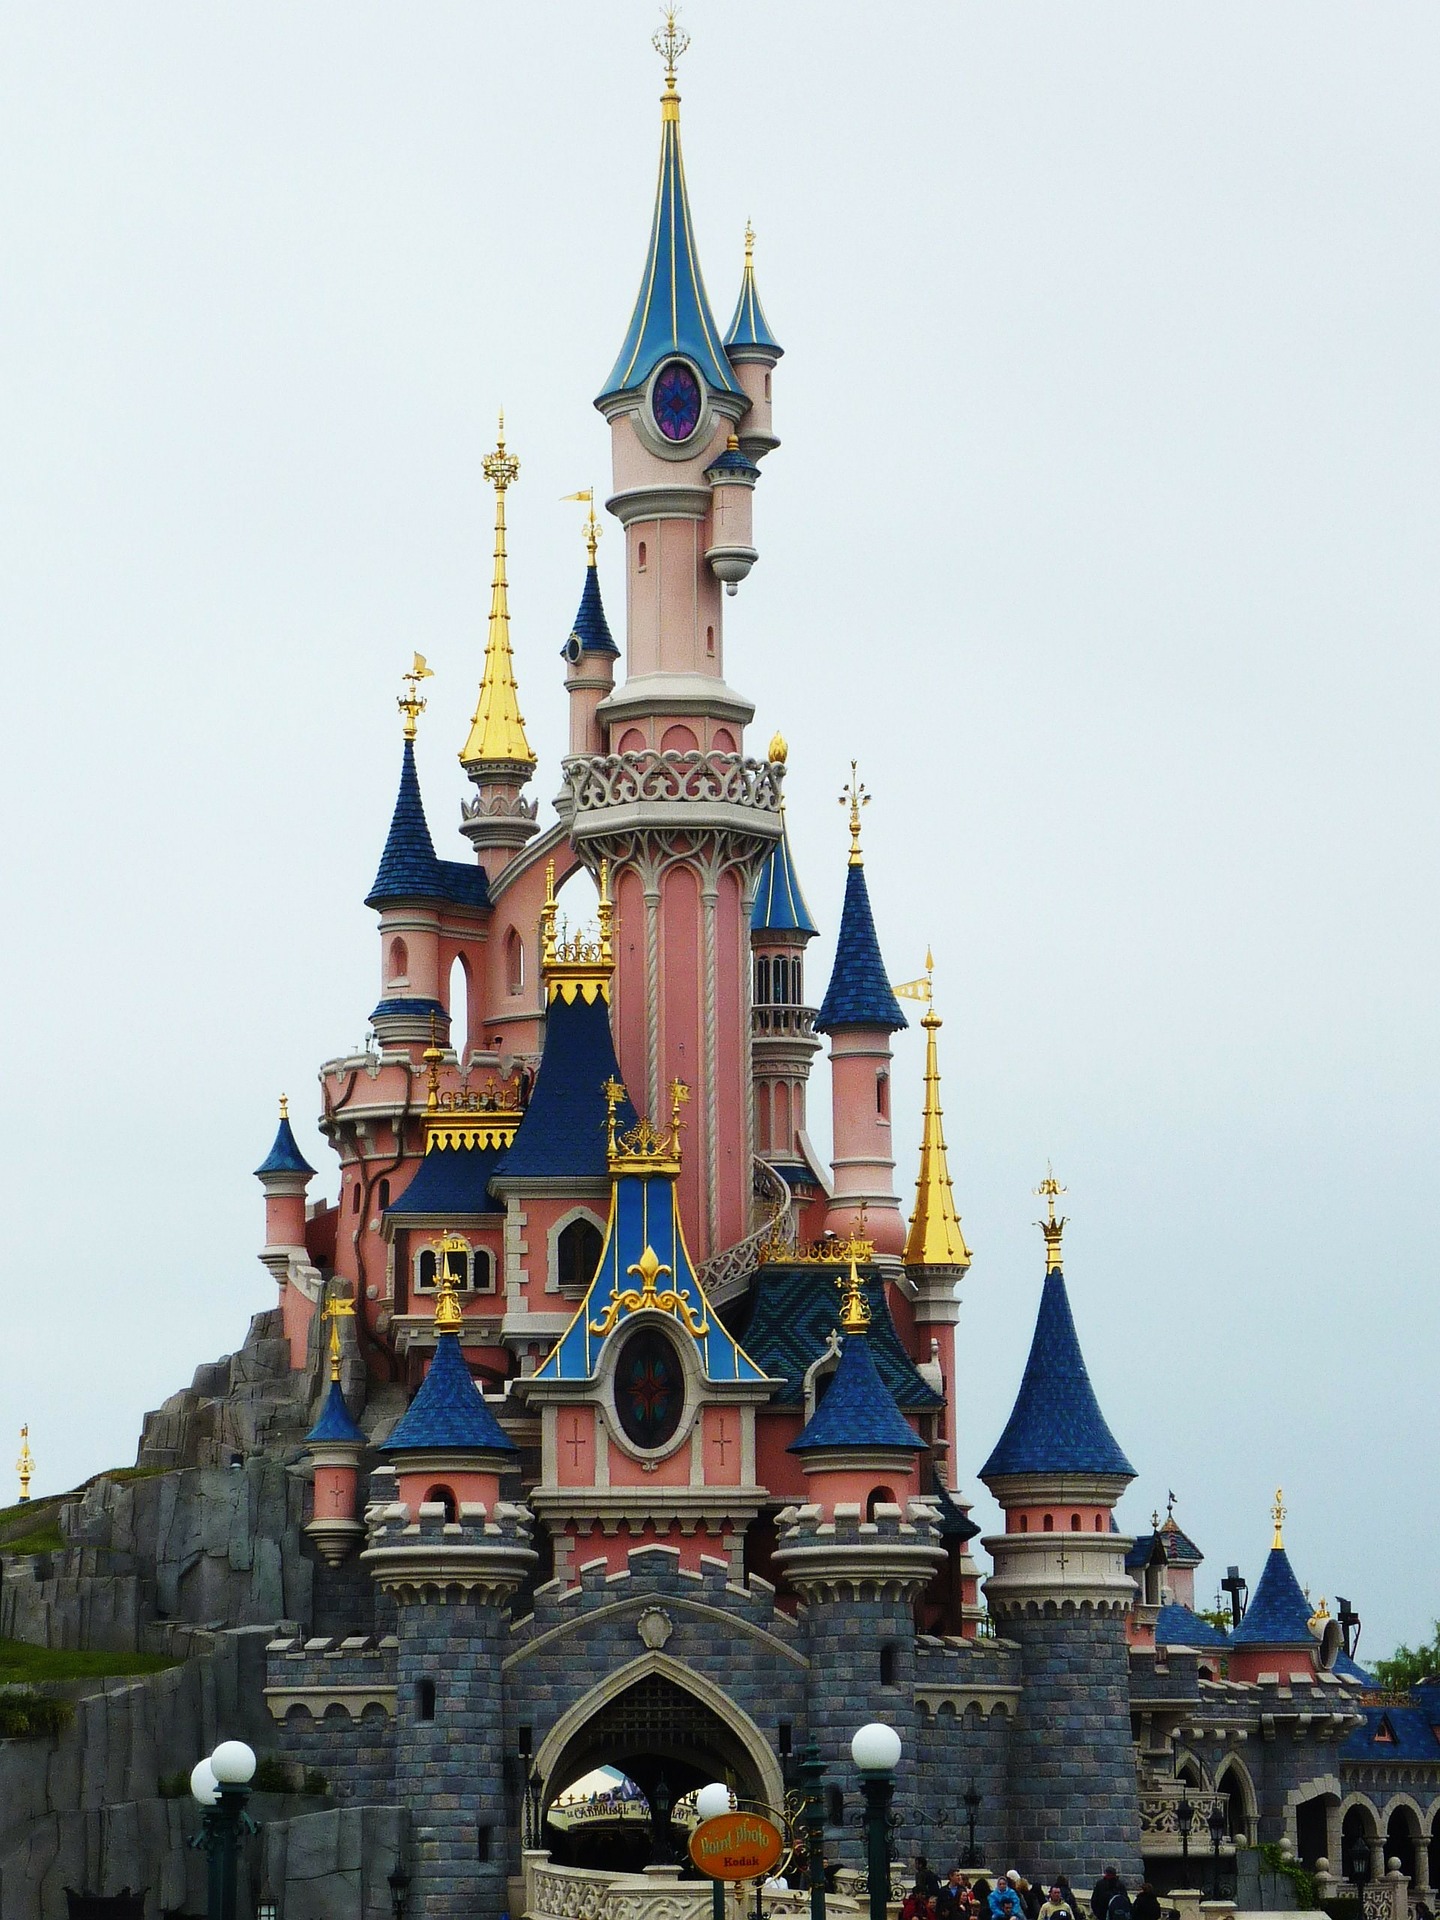 Disneyland castle in Paris